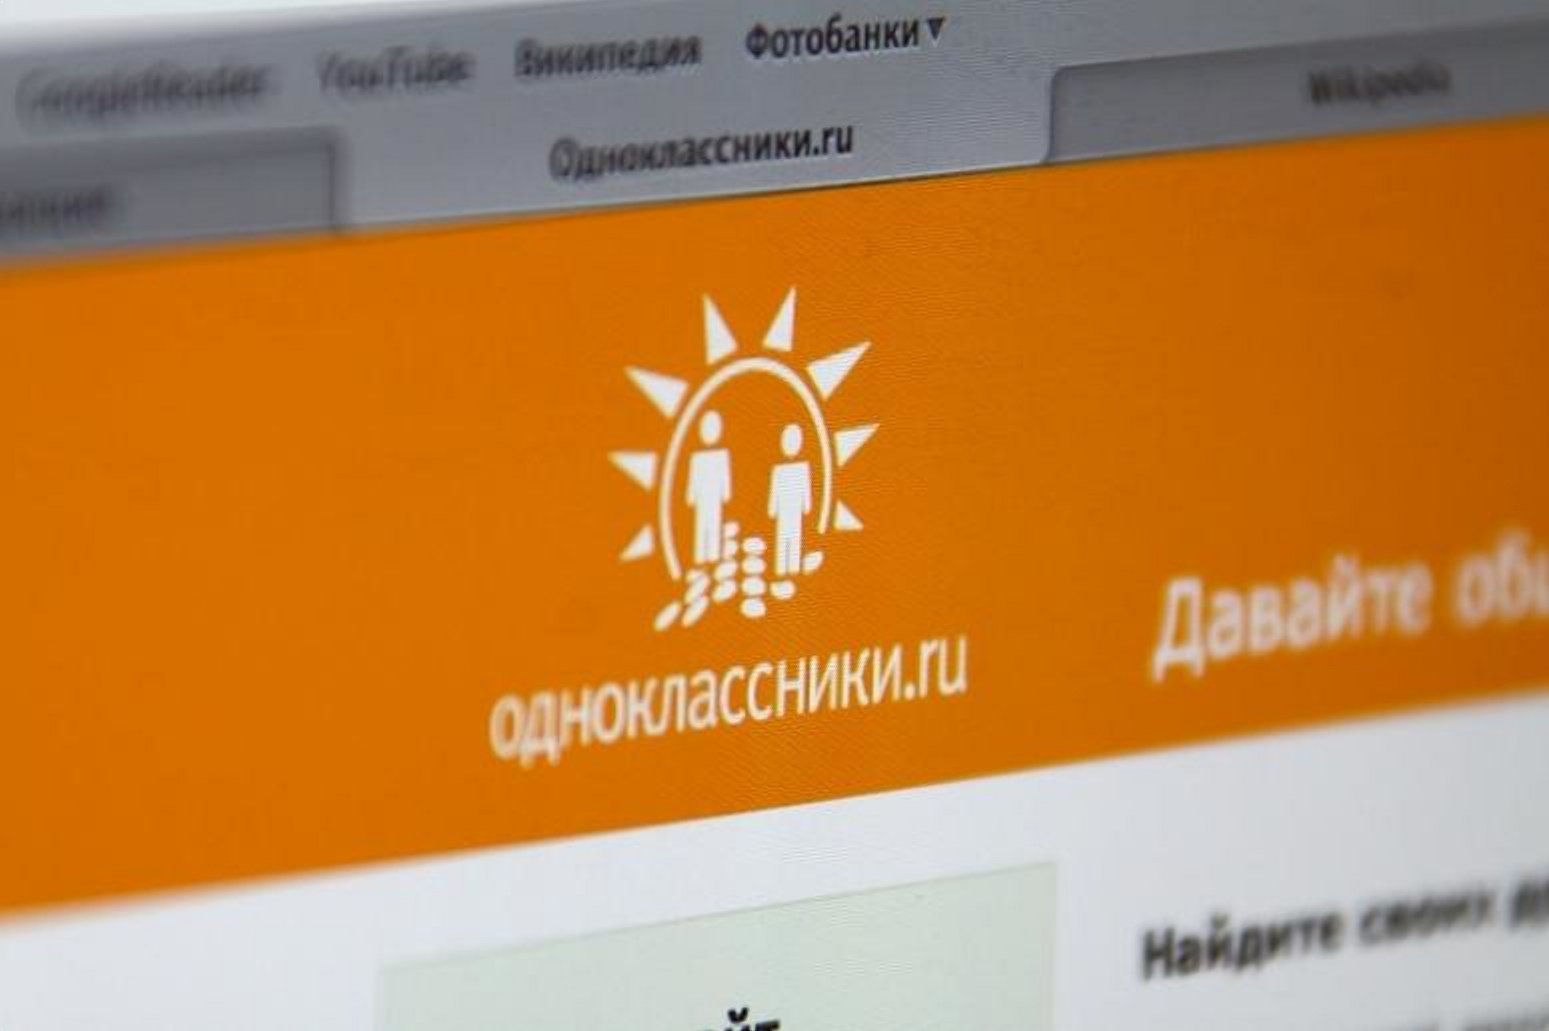 Сколько социальная сеть «Одноклассники» выплатила разработчикам игр в 2018 году  